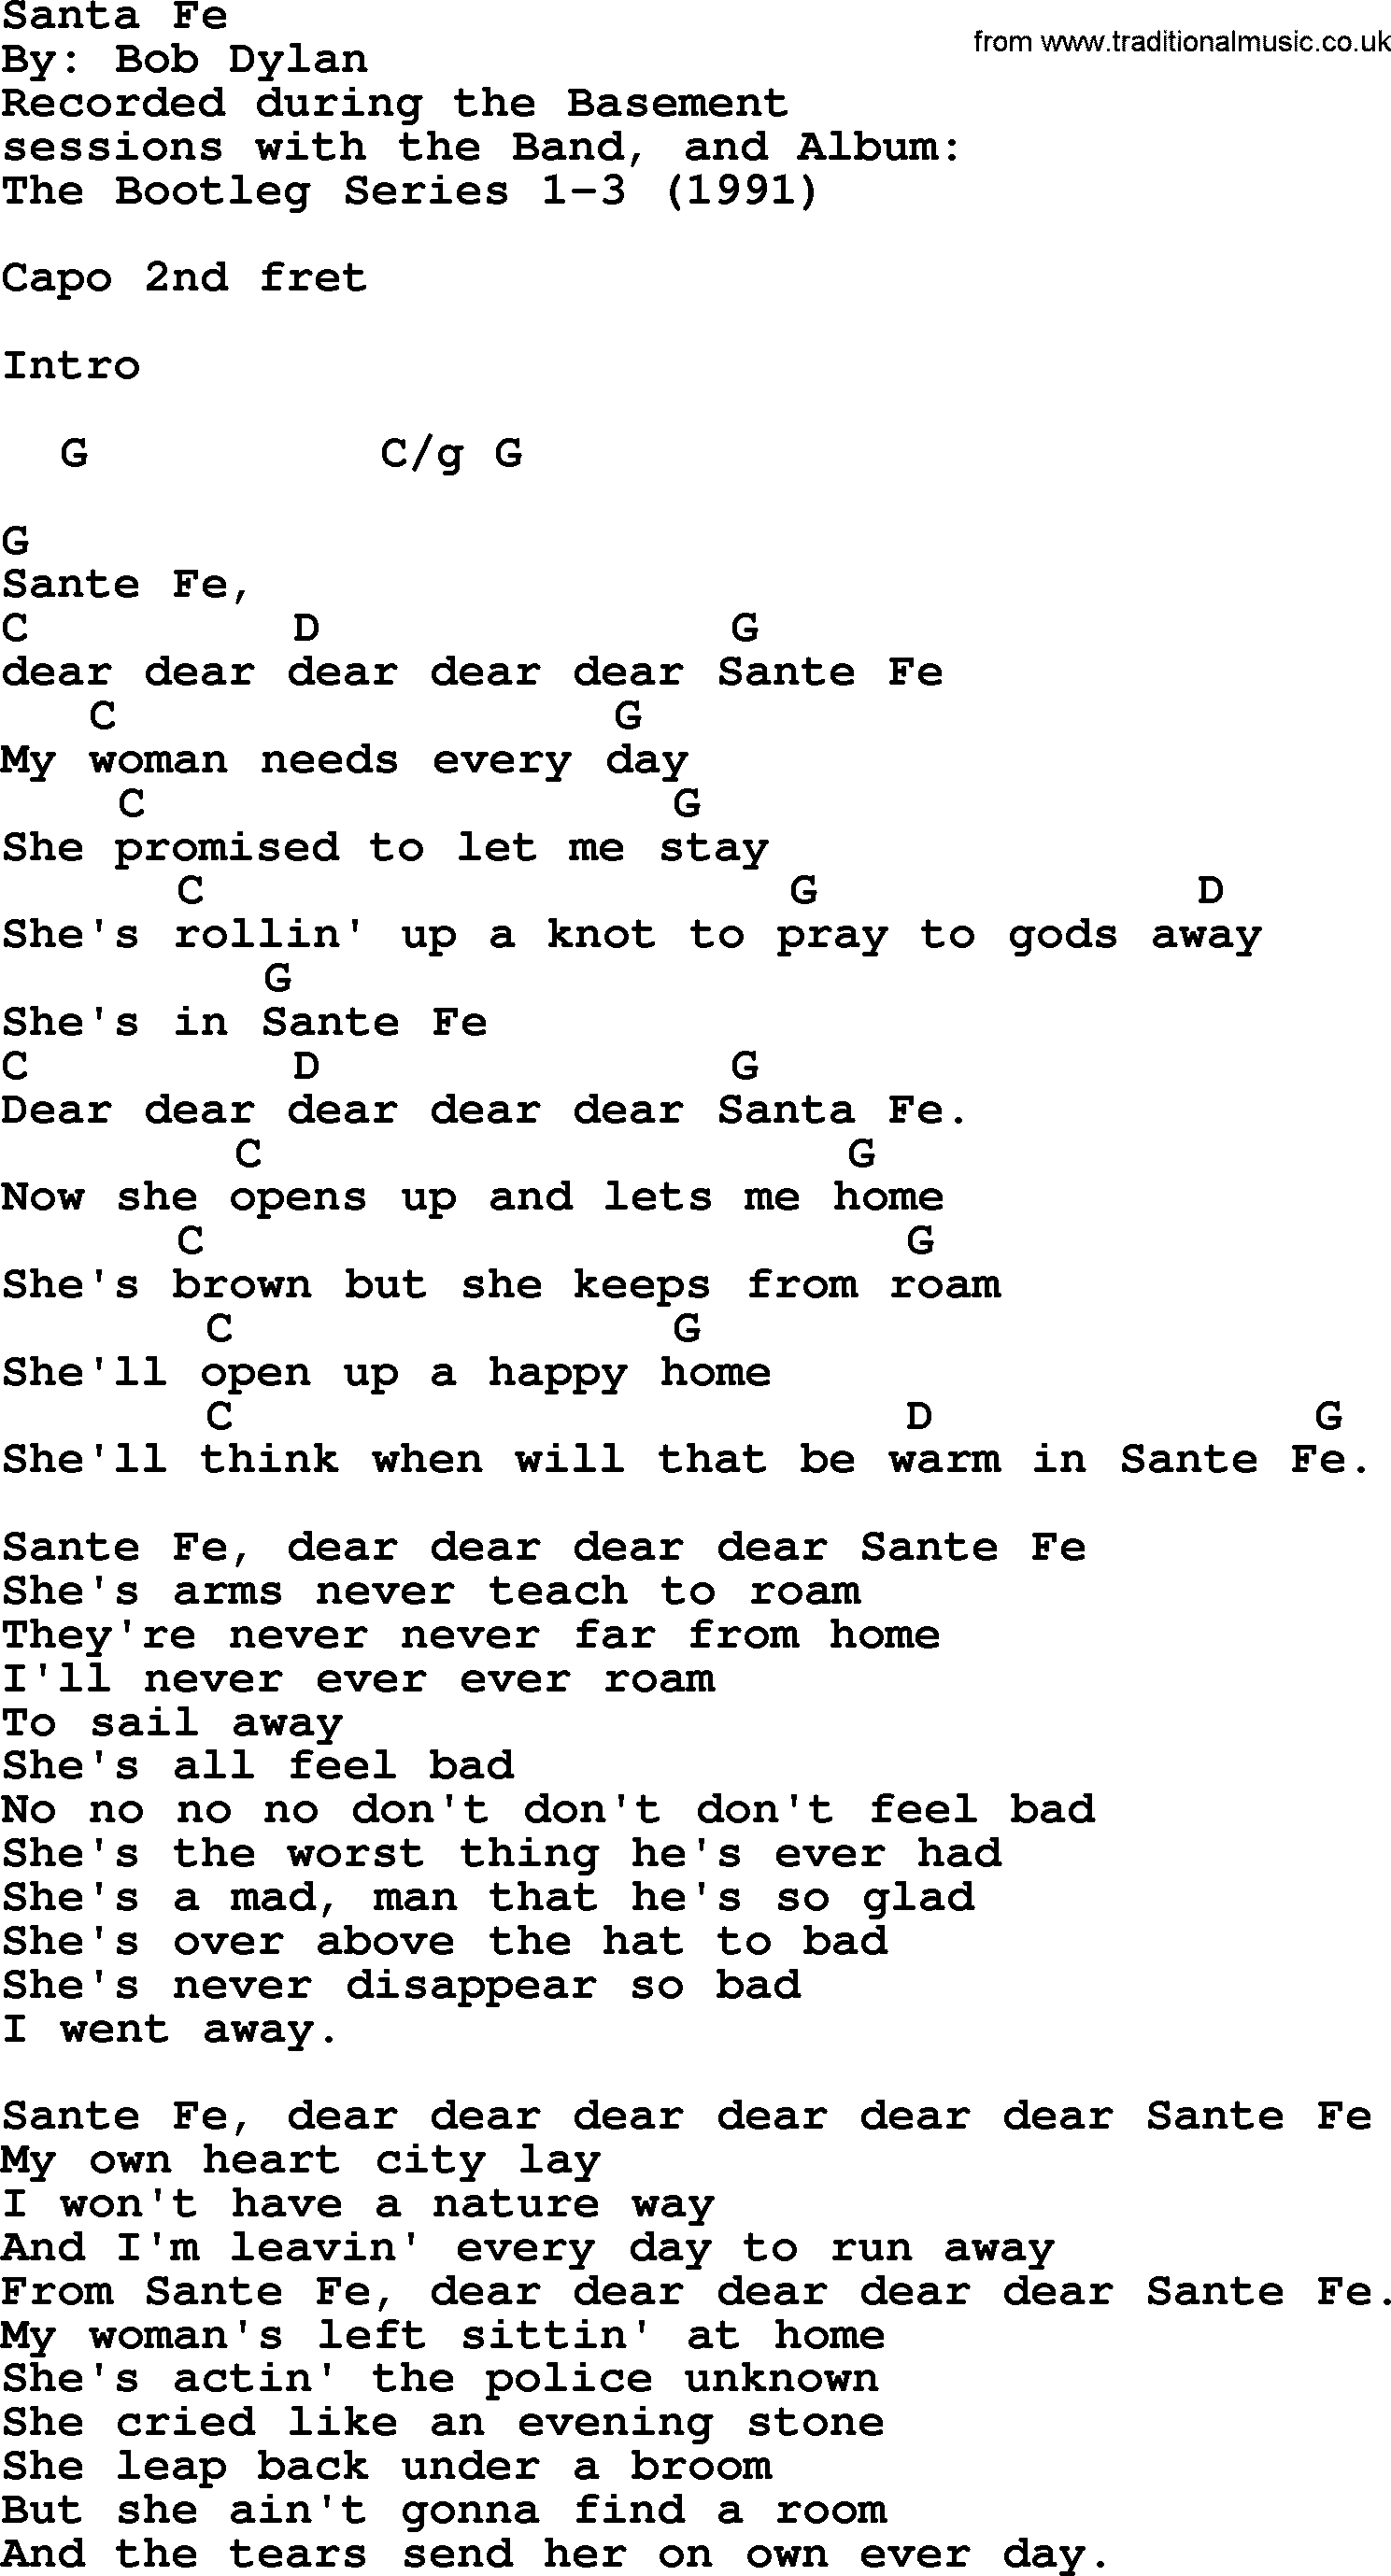 Bob Dylan song, lyrics with chords - Santa Fe